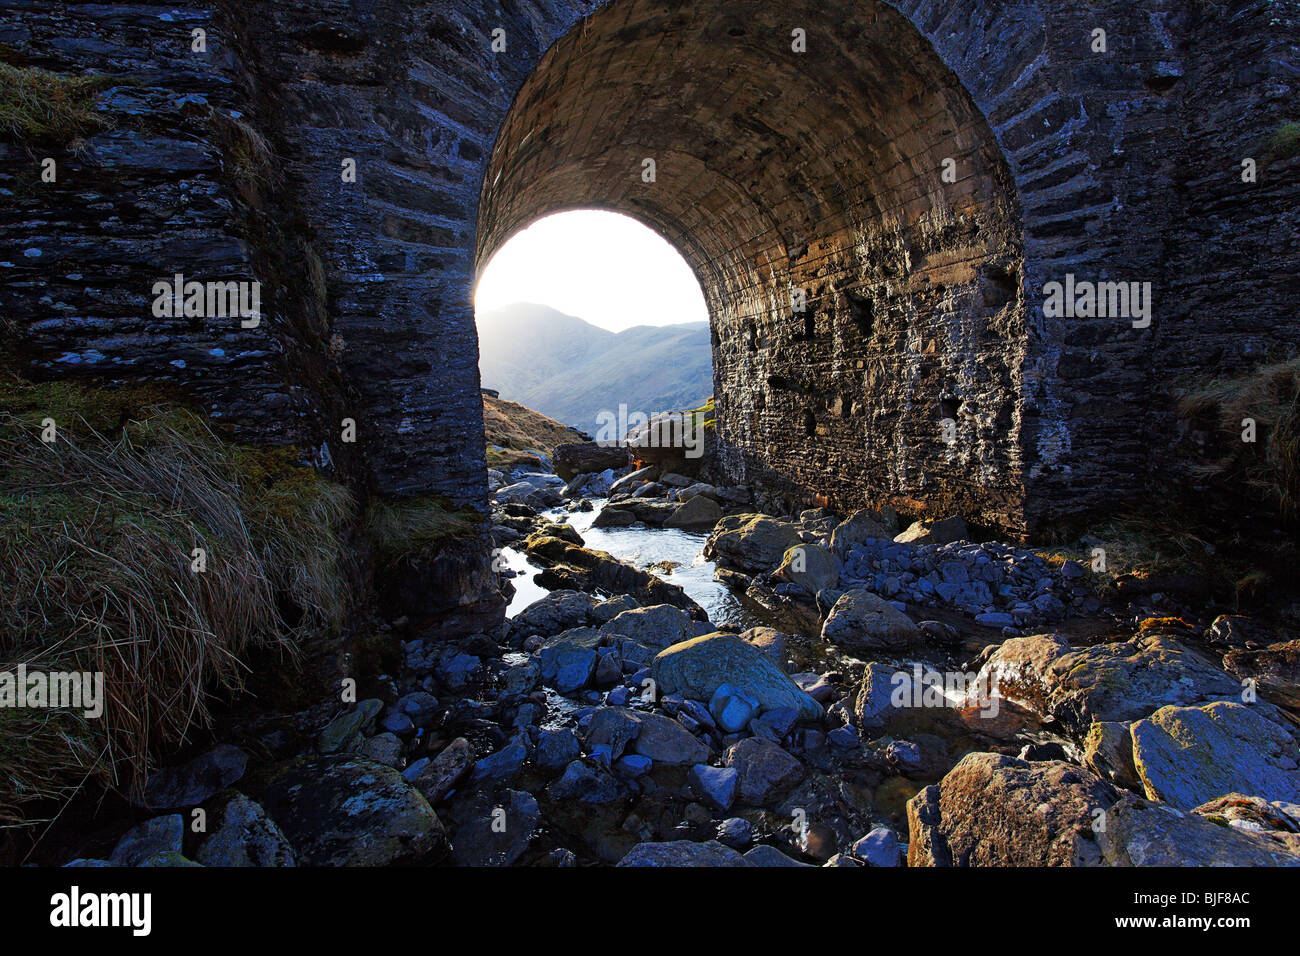 Chiudere la foto del ponte ad arco oltre il torrente di montagna che mostra la luce di contrasto Foto Stock